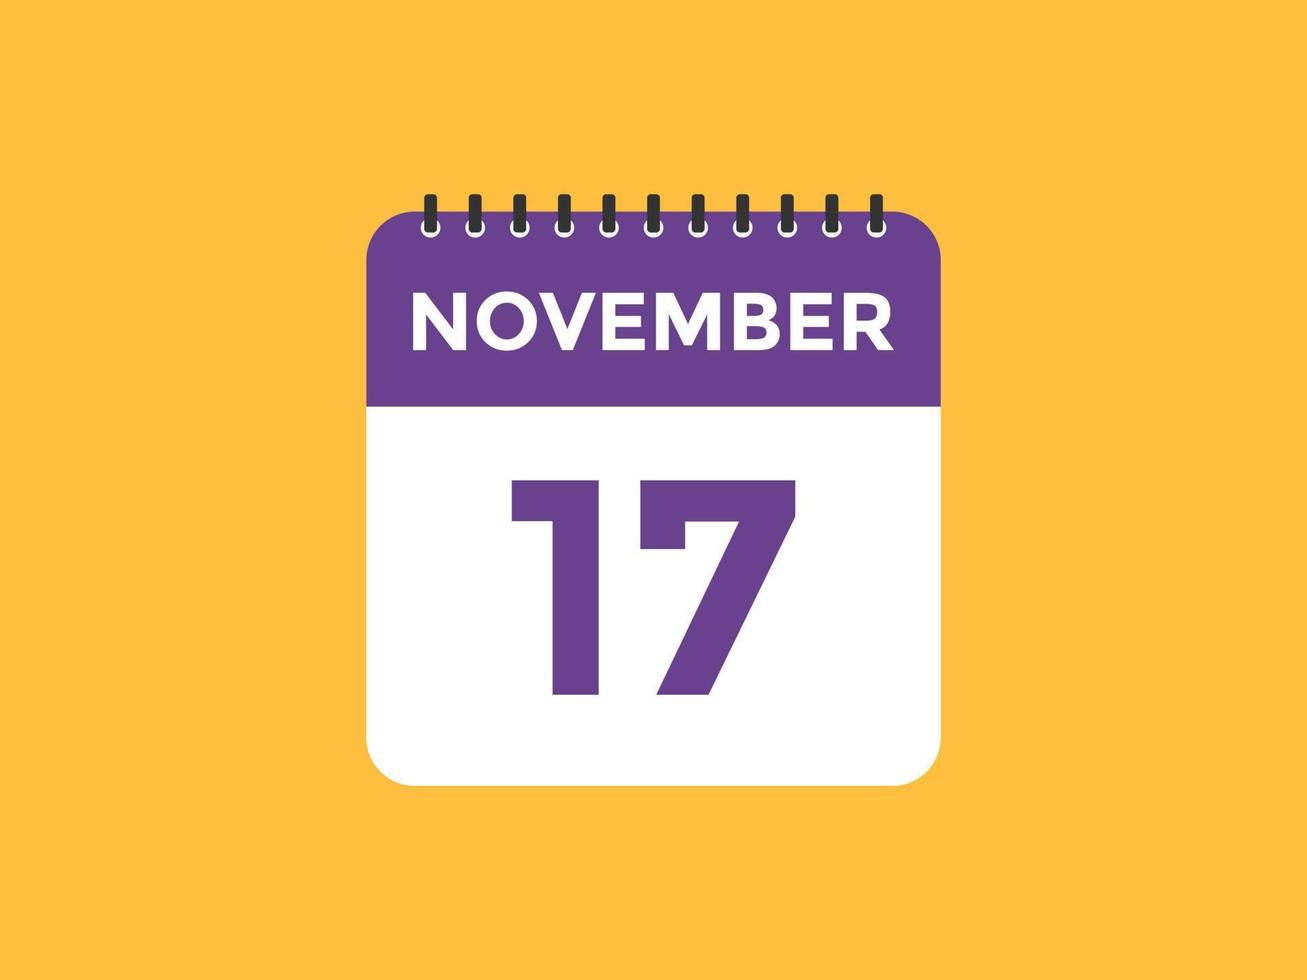 lembrete de calendário de 17 de novembro. 17 de novembro modelo de ícone de calendário diário. modelo de design de ícone de calendário 17 de novembro. ilustração vetorial vetor